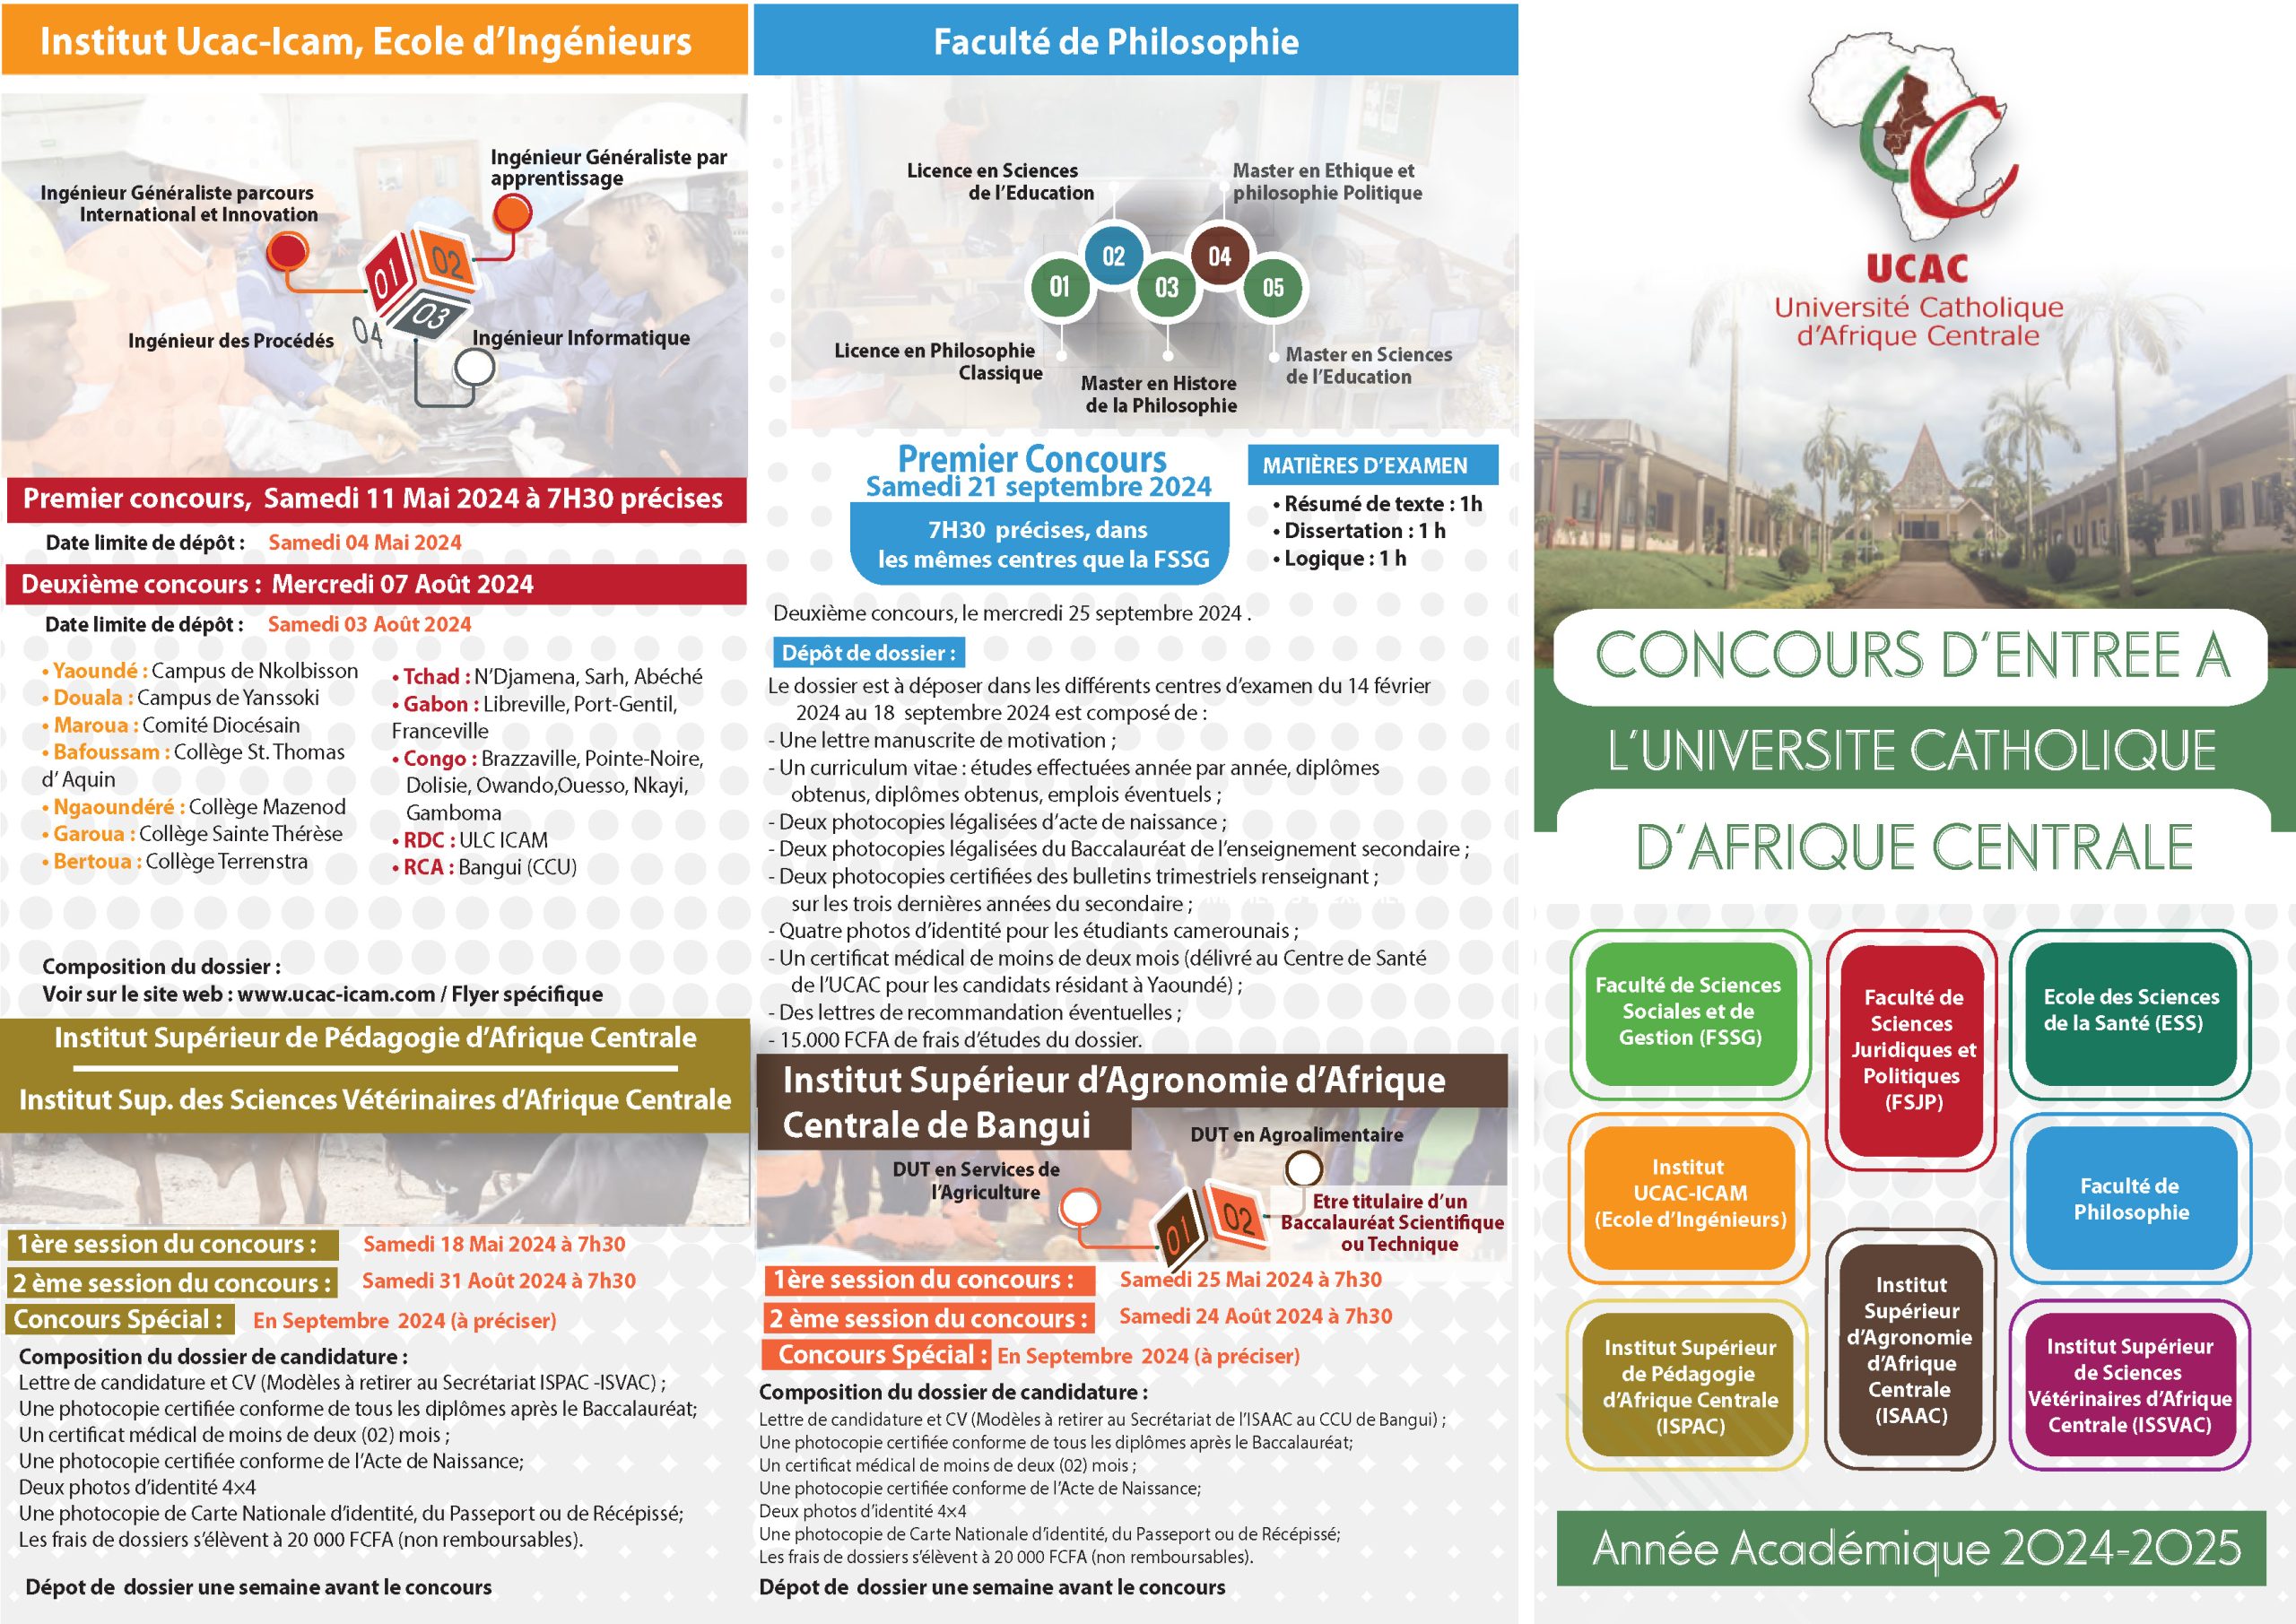 CONCOURS D’ENTREE A L'UNIVERSITE CATHOLIQUE D’AFRIQUE CENTRALE 2024-2025